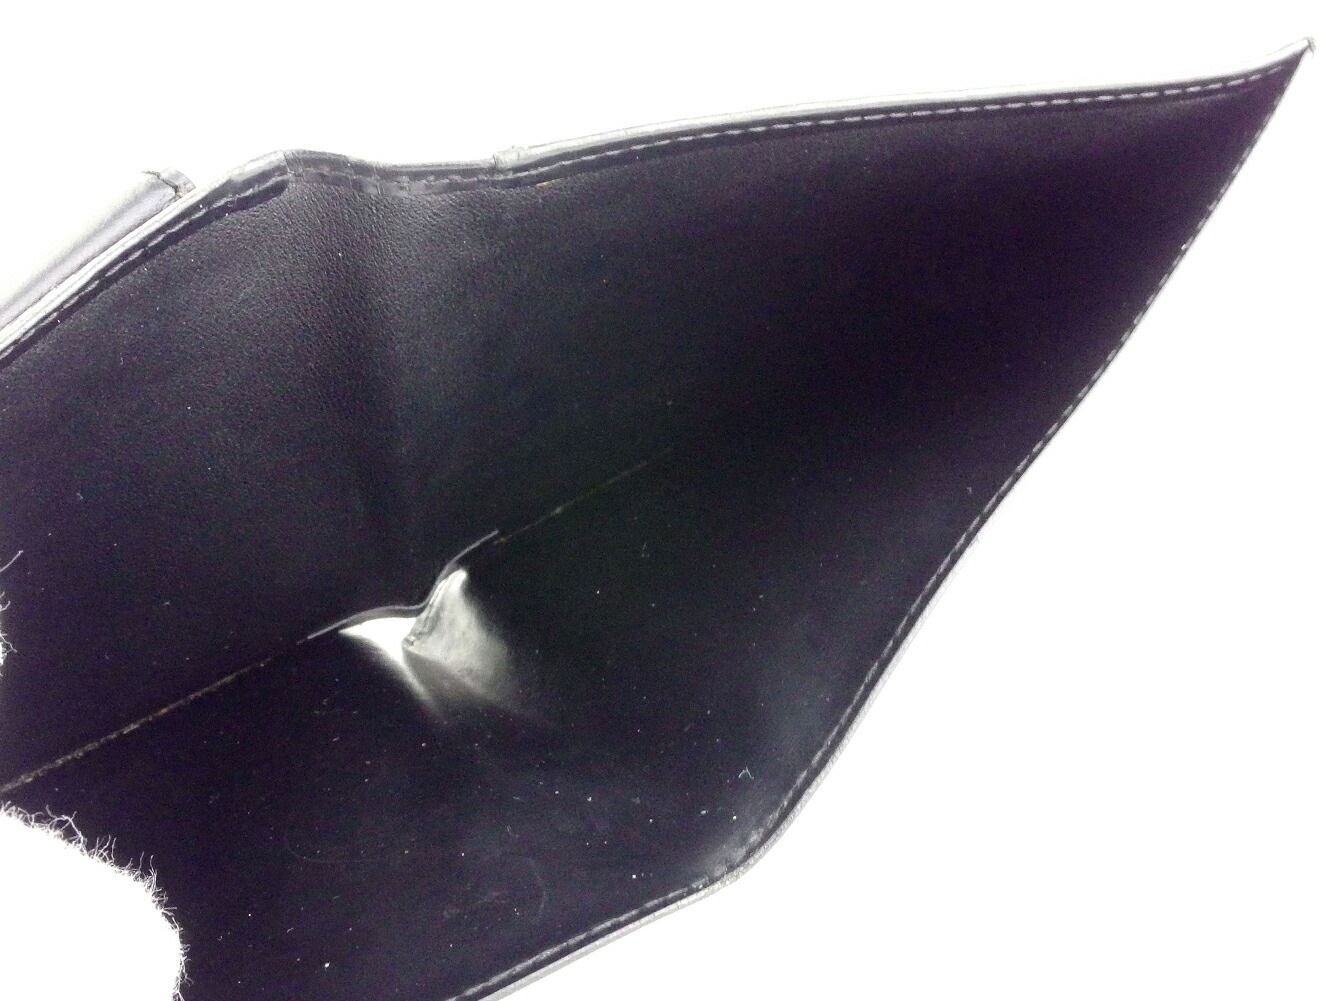 ダンヒル 財布 ロンドンスタイ... : バッグ・雑貨 : ダンヒル 二つ折り 安い超歓迎